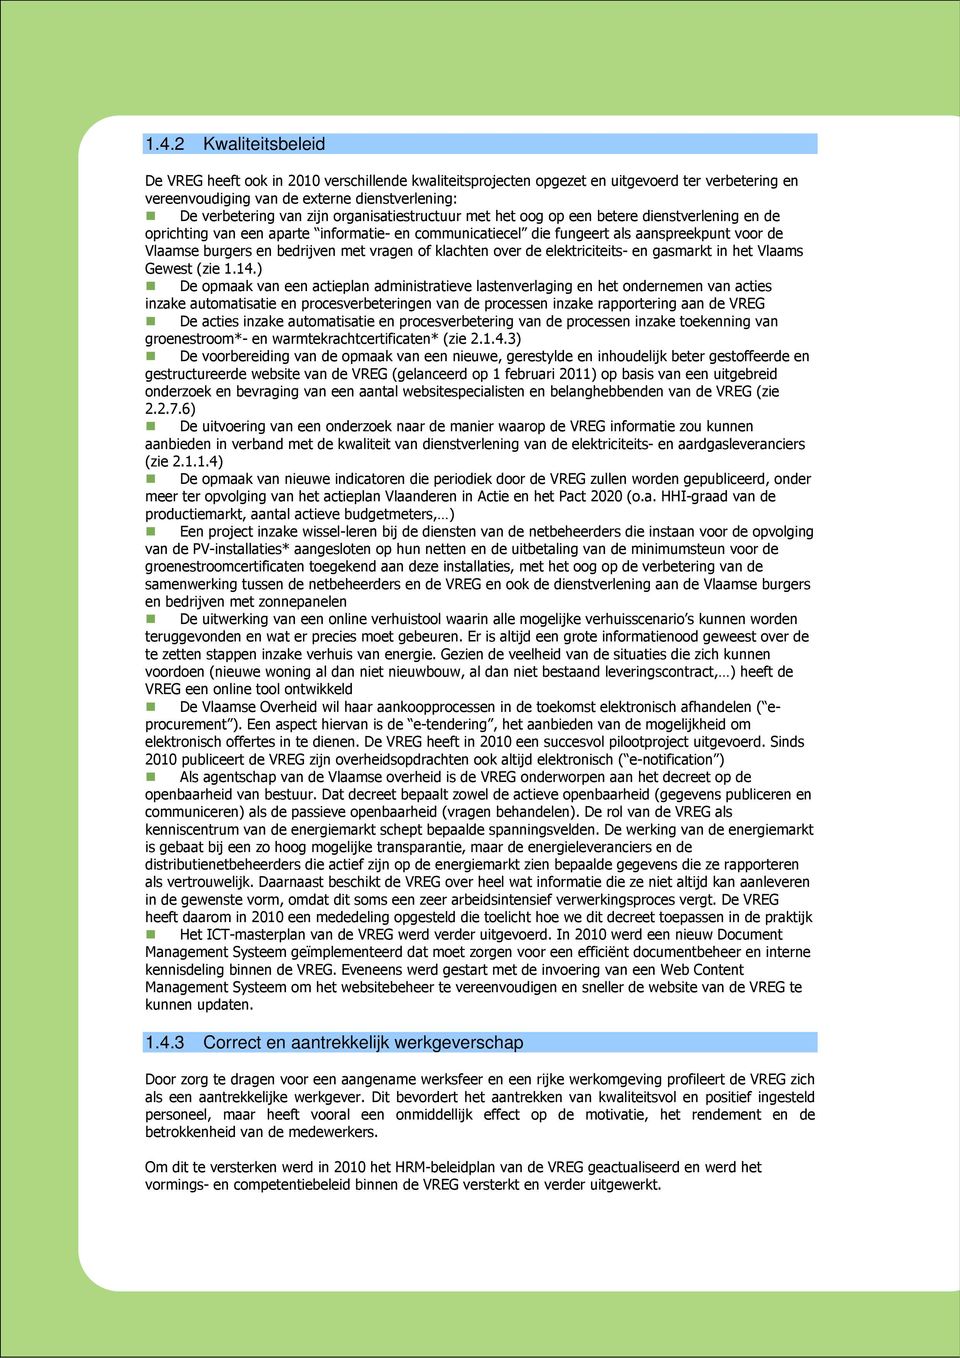 vragen of klachten over de elektriciteits- en gasmarkt in het Vlaams Gewest (zie 1.14.